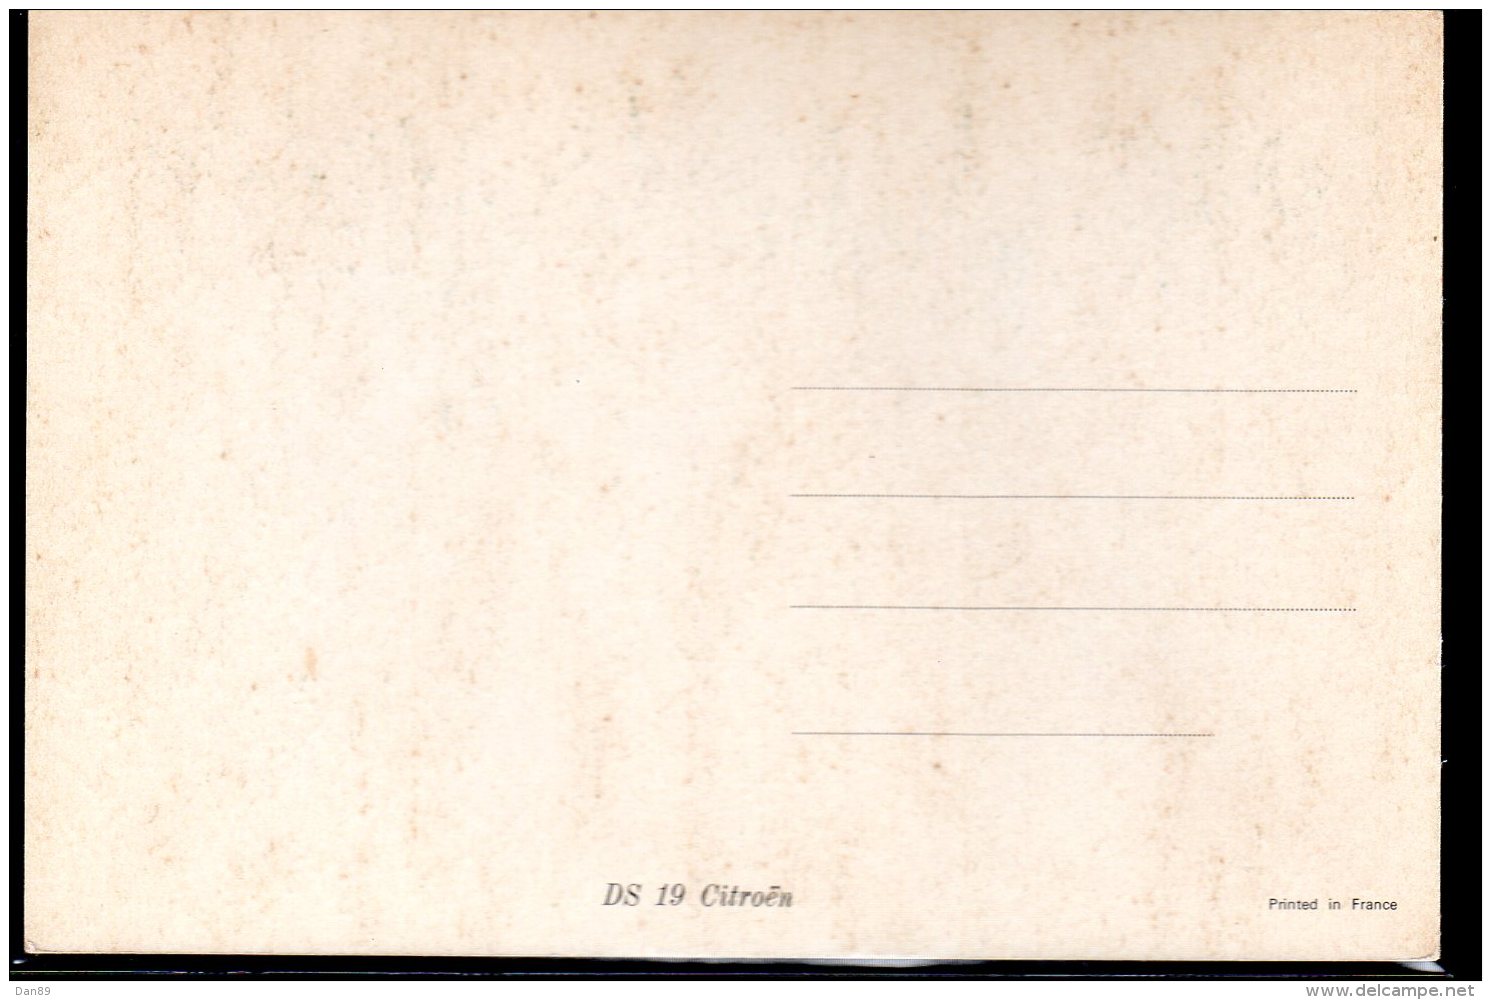 770 - Citroen DS 19 Chambord V.1966 - Carte Postale Originale Publicité USA - Original Dealer Advertising Postcard - PKW